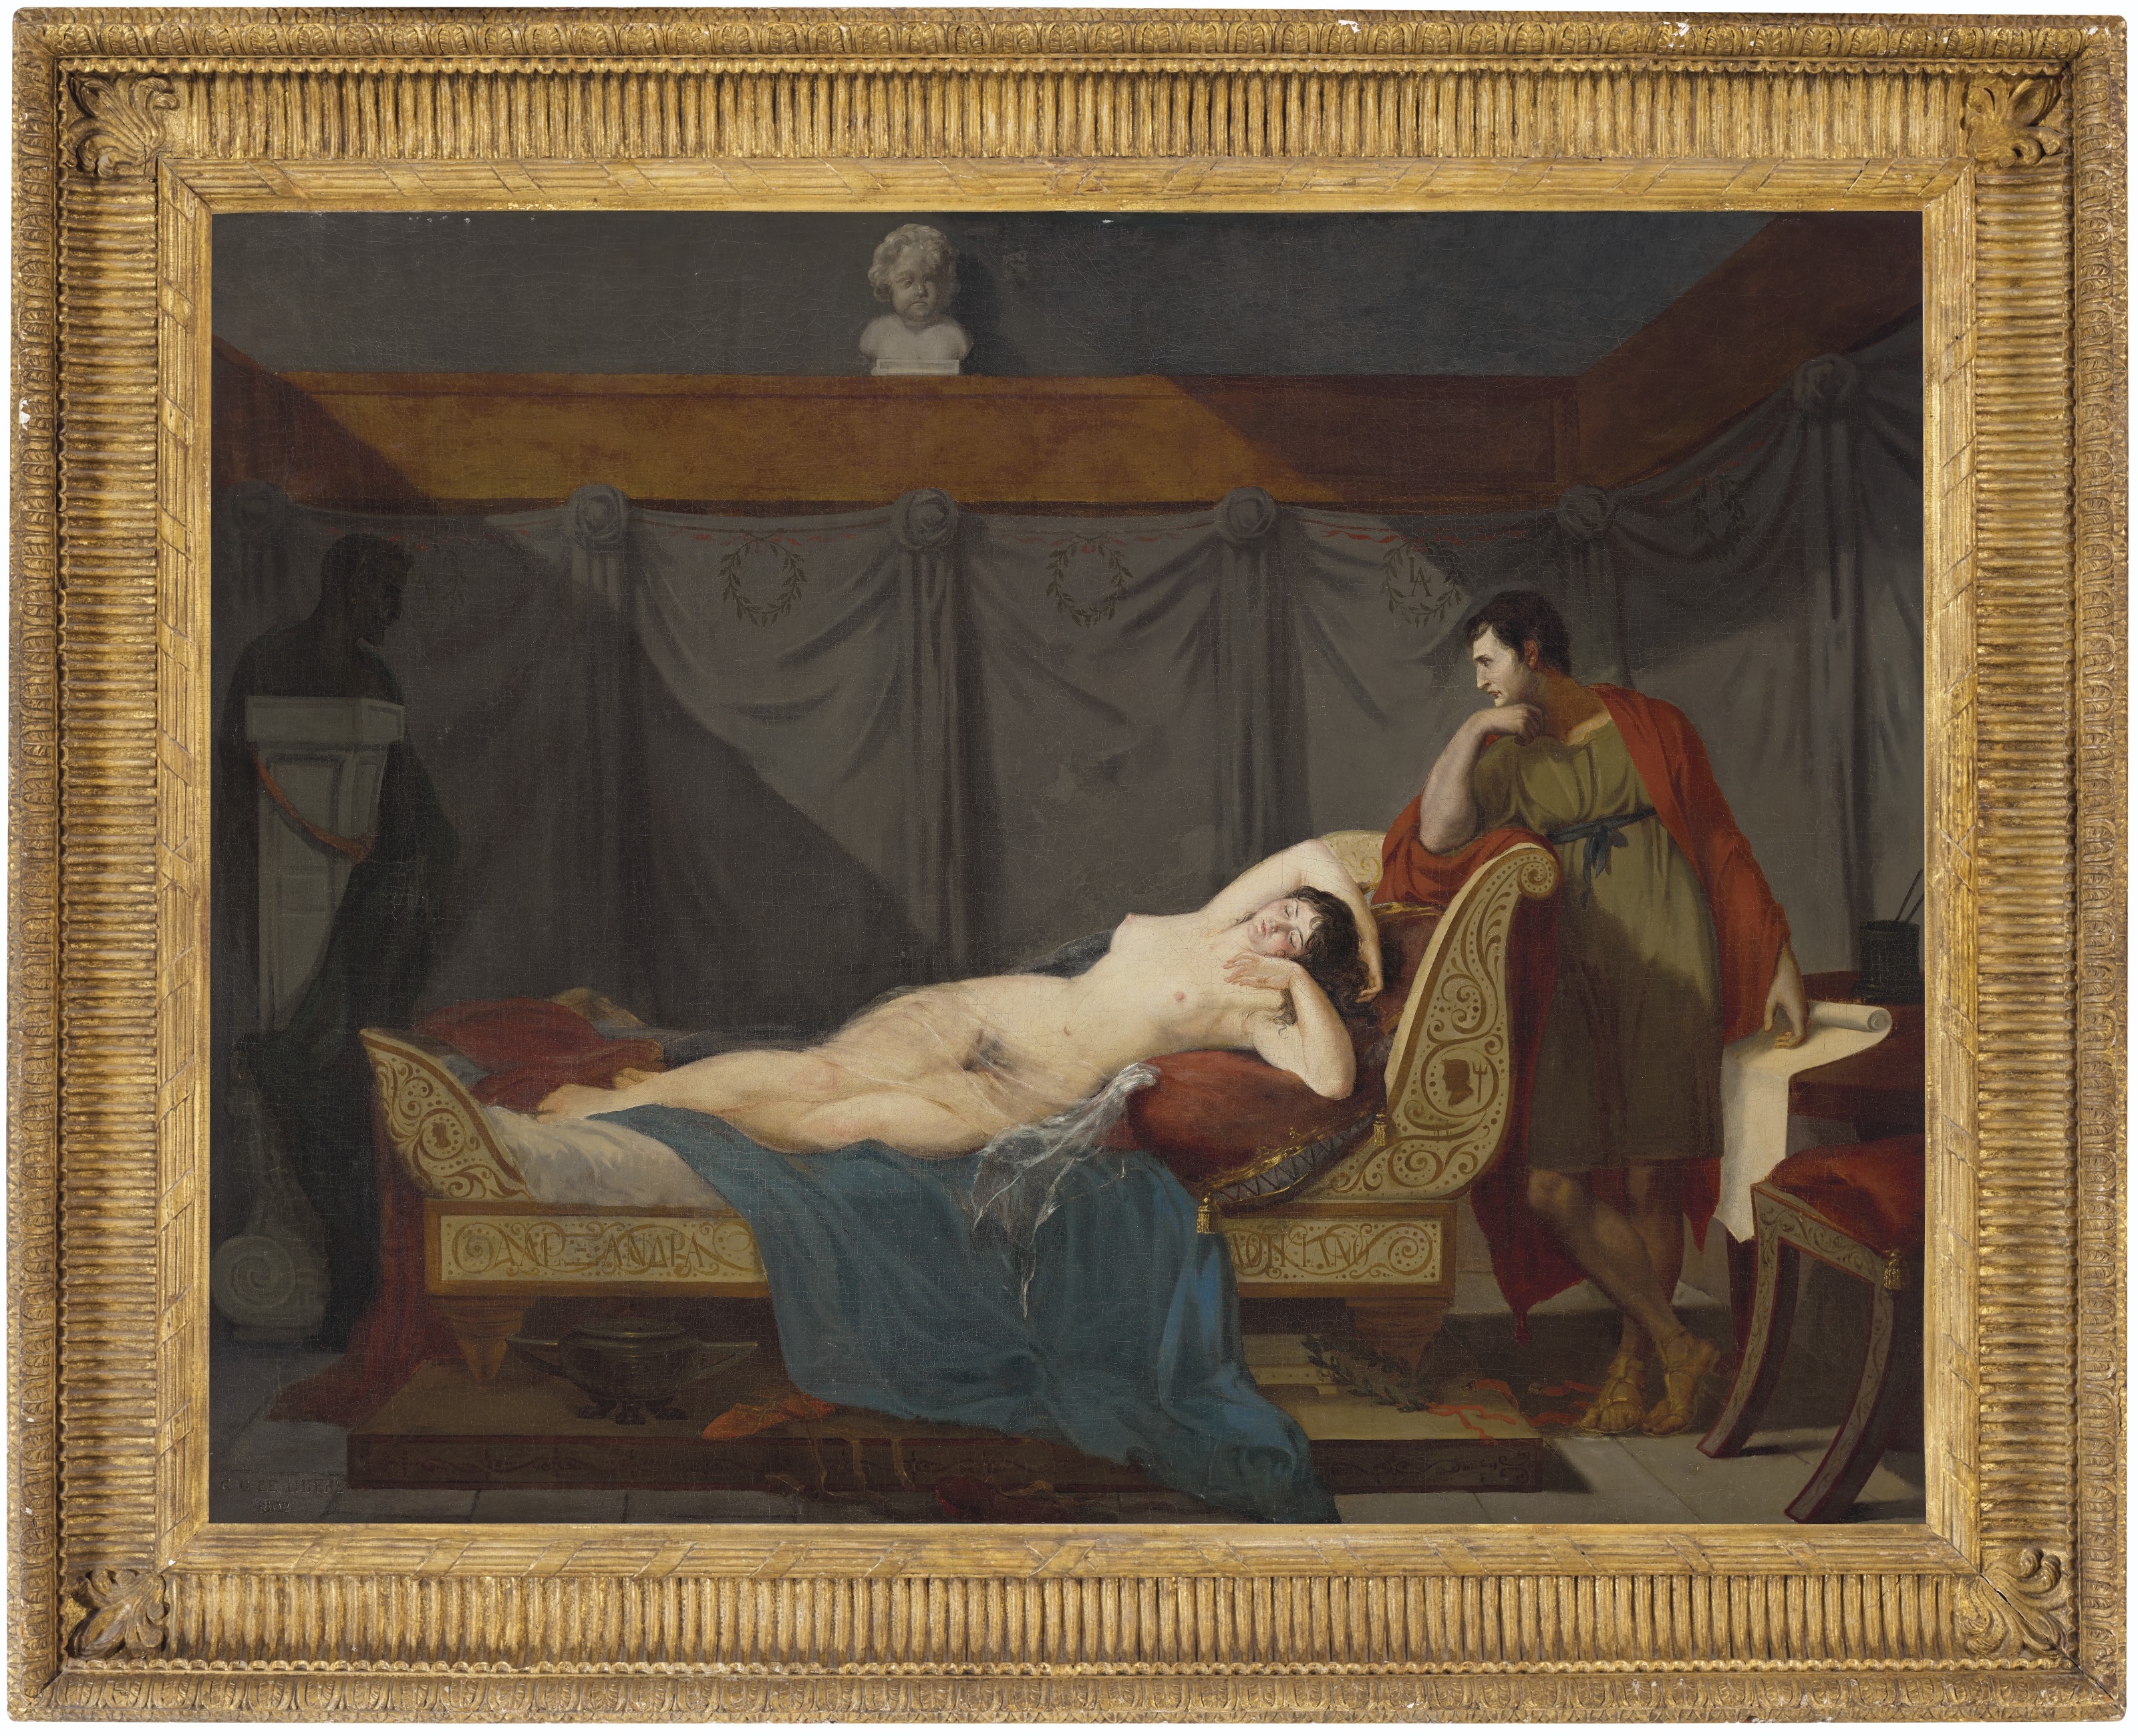 Artwork by Guillaume Guillon-Lethière, Lucien Bonaparte, in antique dress, contemplating his mistress, Alexandrine de Bleschamp Jouberton, Made of oil on canvas